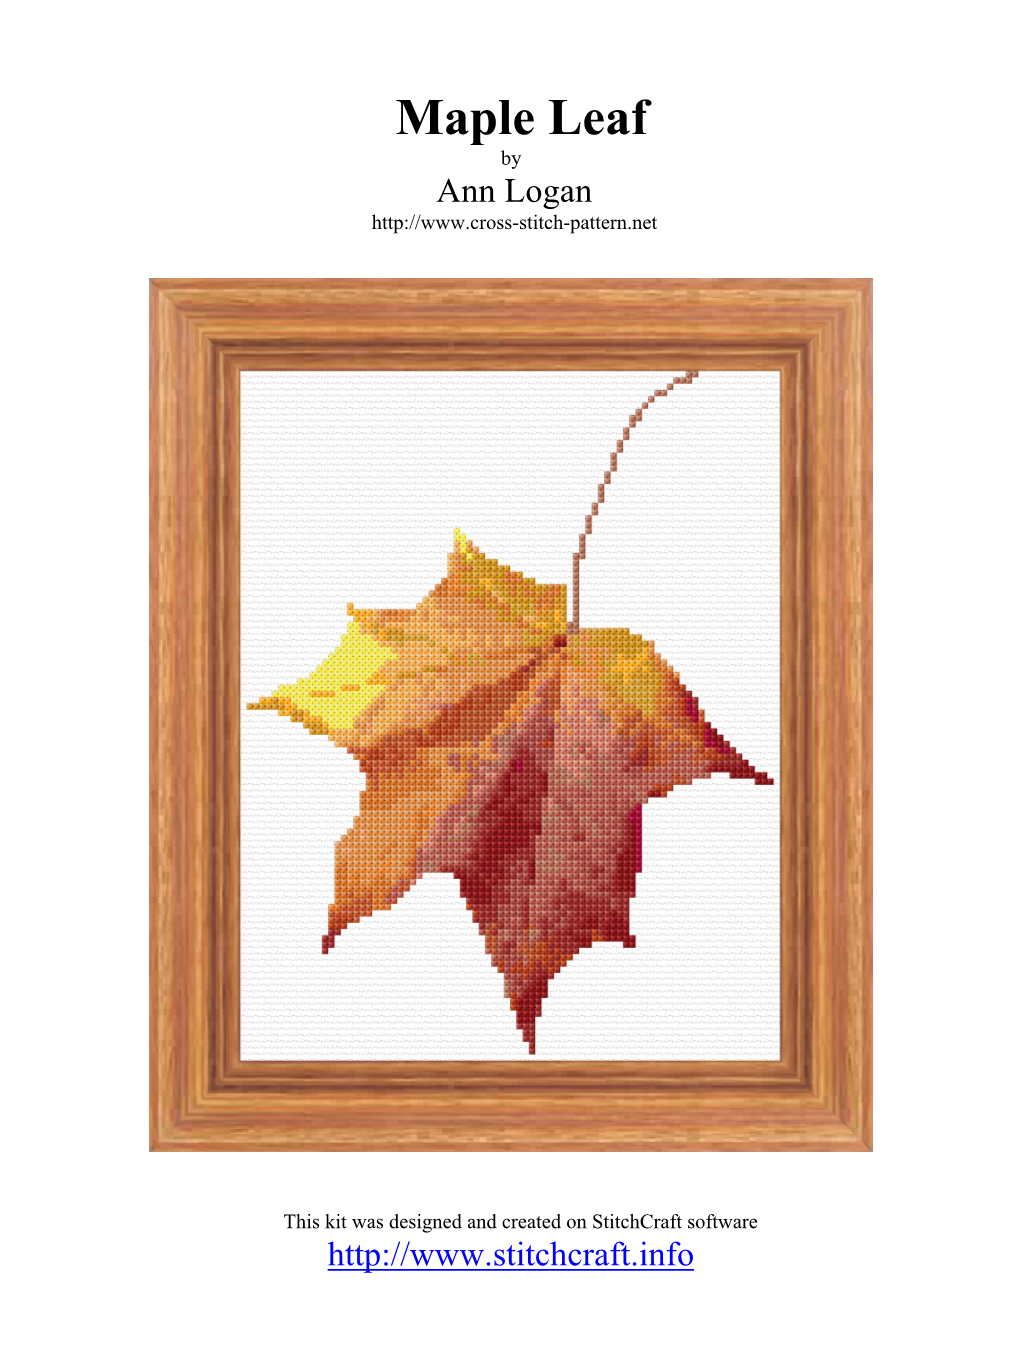 Maple Leaf by Ann Logan